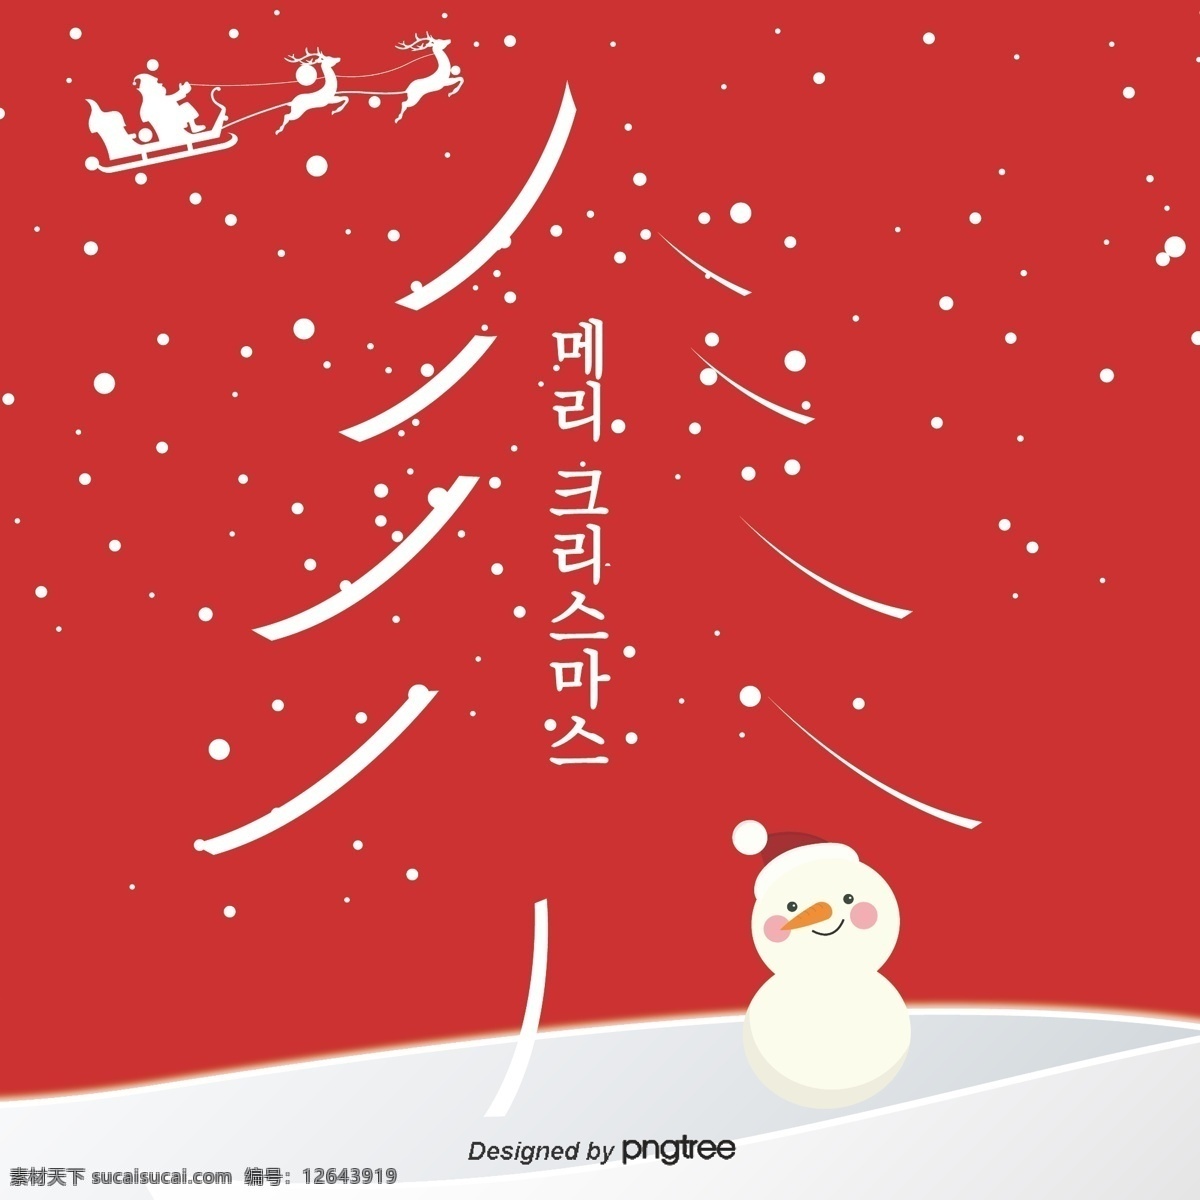 韩国 背景 红色 复古 风格 圣诞贺卡 眼睛 雪人 祝 圣诞快乐 冰盖 卡